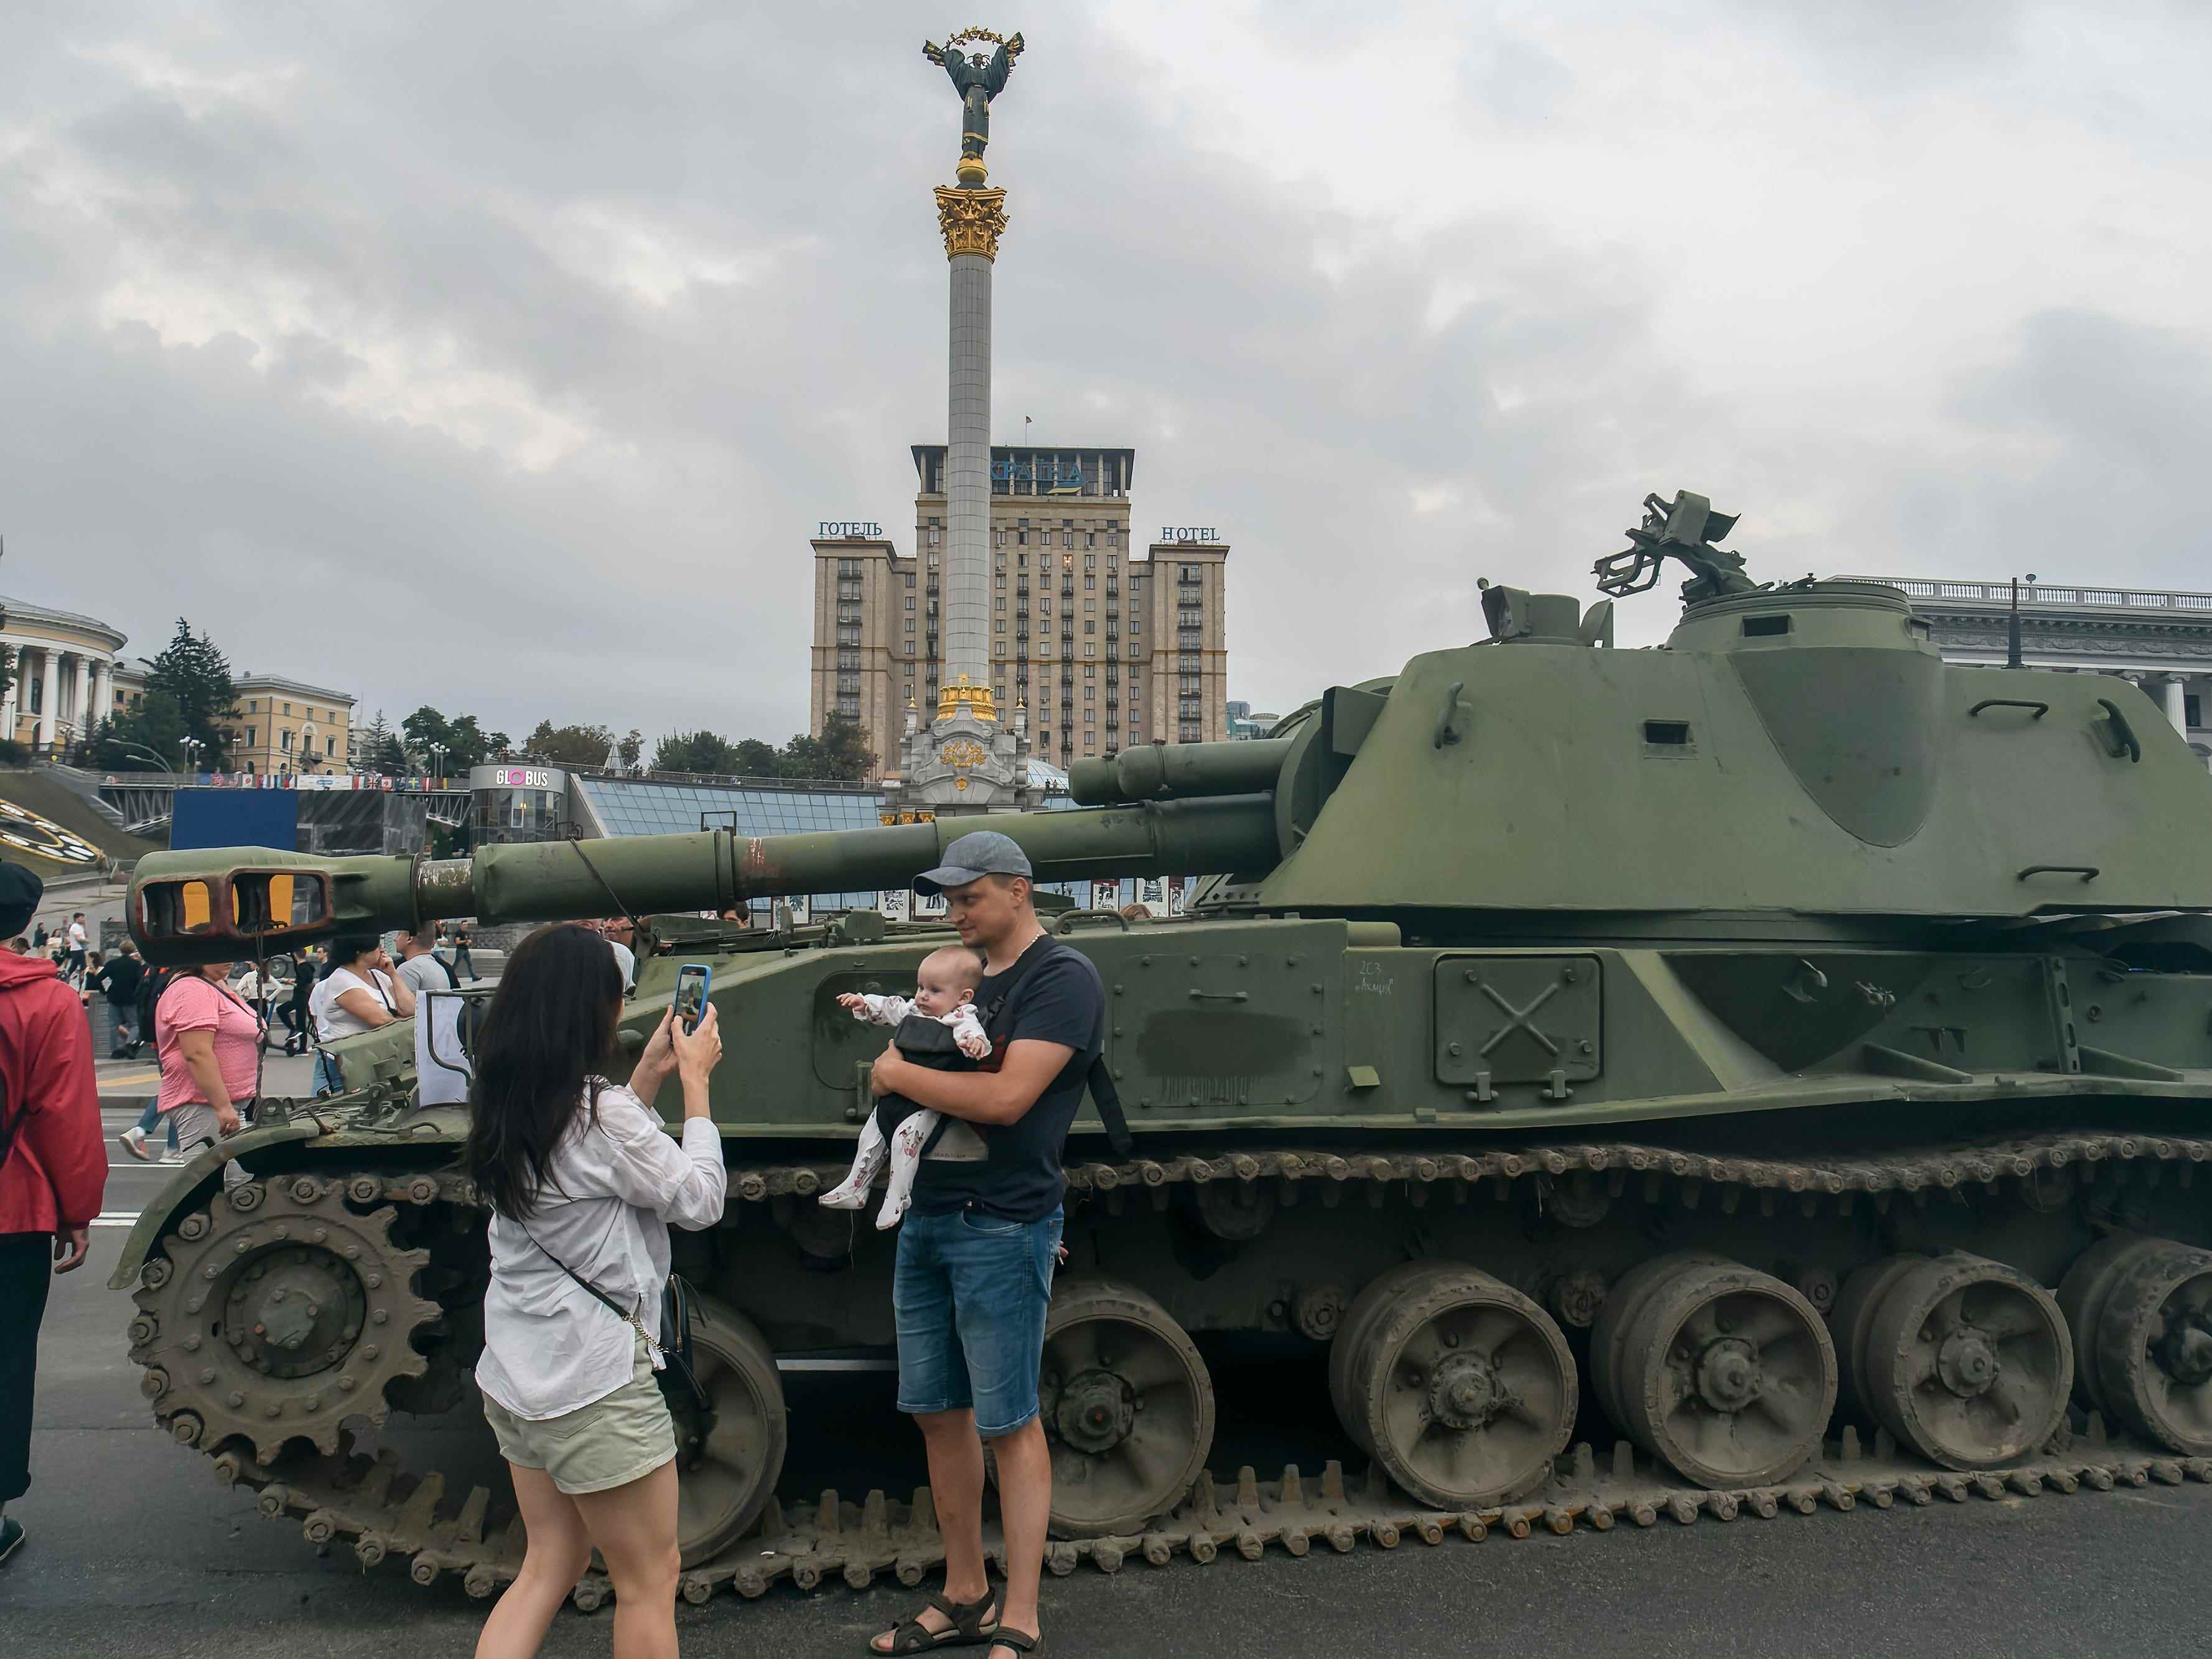 Einwohner von Kiew besuchen die Ausstellung zerstörter russischer Militärfahrzeuge in der Chreschtschatyk-Straße im Zentrum von Kiew, Ukraine, 20. August 2022.